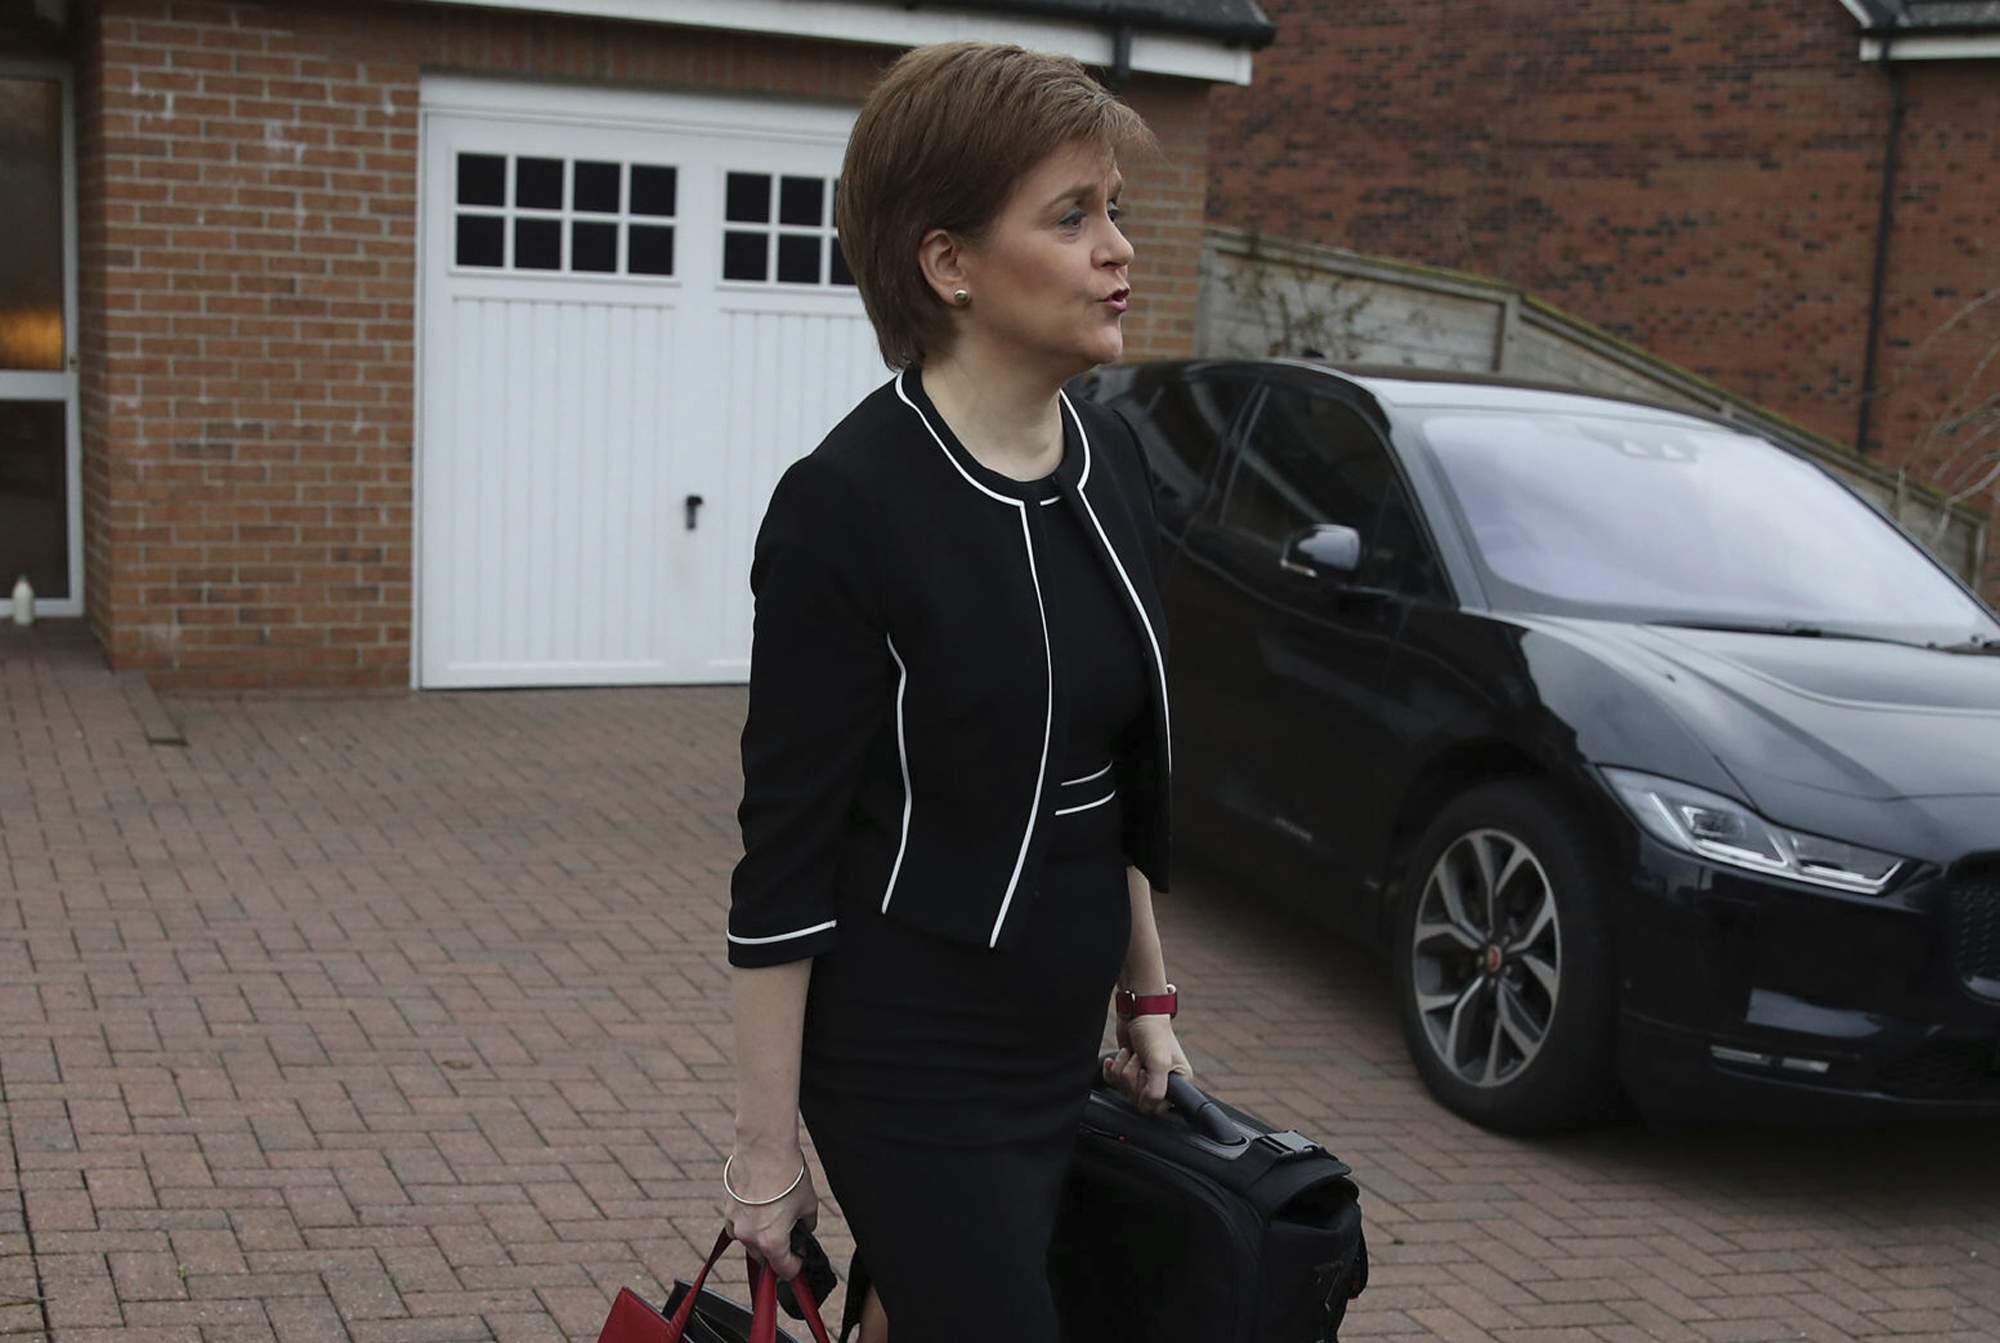 In split vote, probe says Scottish leader misled lawmakers